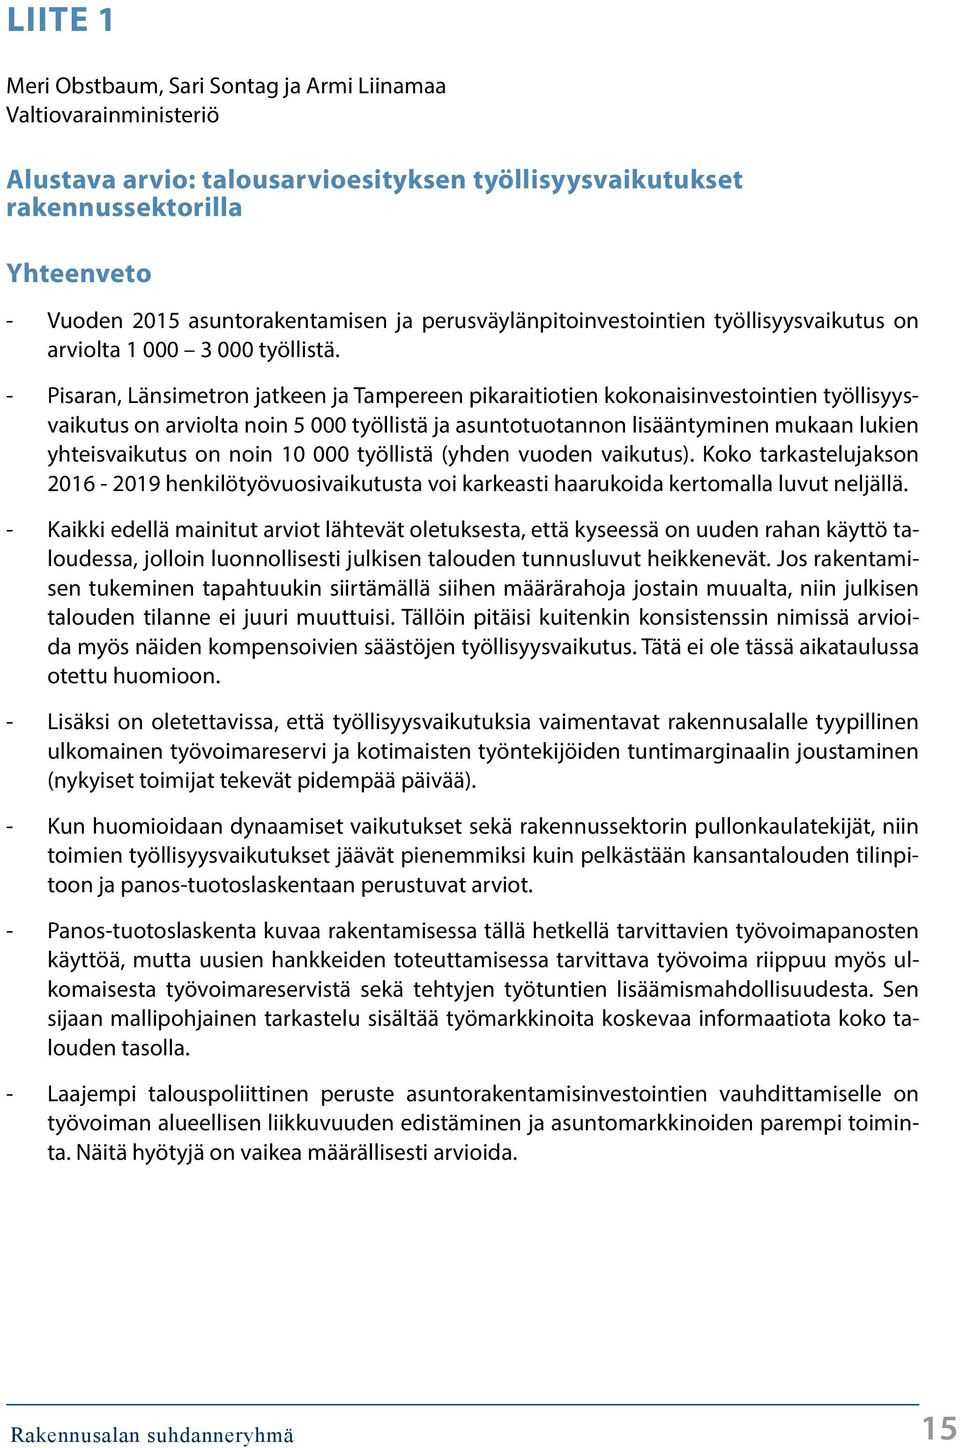 - Pisaran, Länsimetron jatkeen ja Tampereen pikaraitiotien kokonaisinvestointien työllisyysvaikutus on arviolta noin 5 työllistä ja asuntotuotannon lisääntyminen mukaan lukien yhteisvaikutus on noin